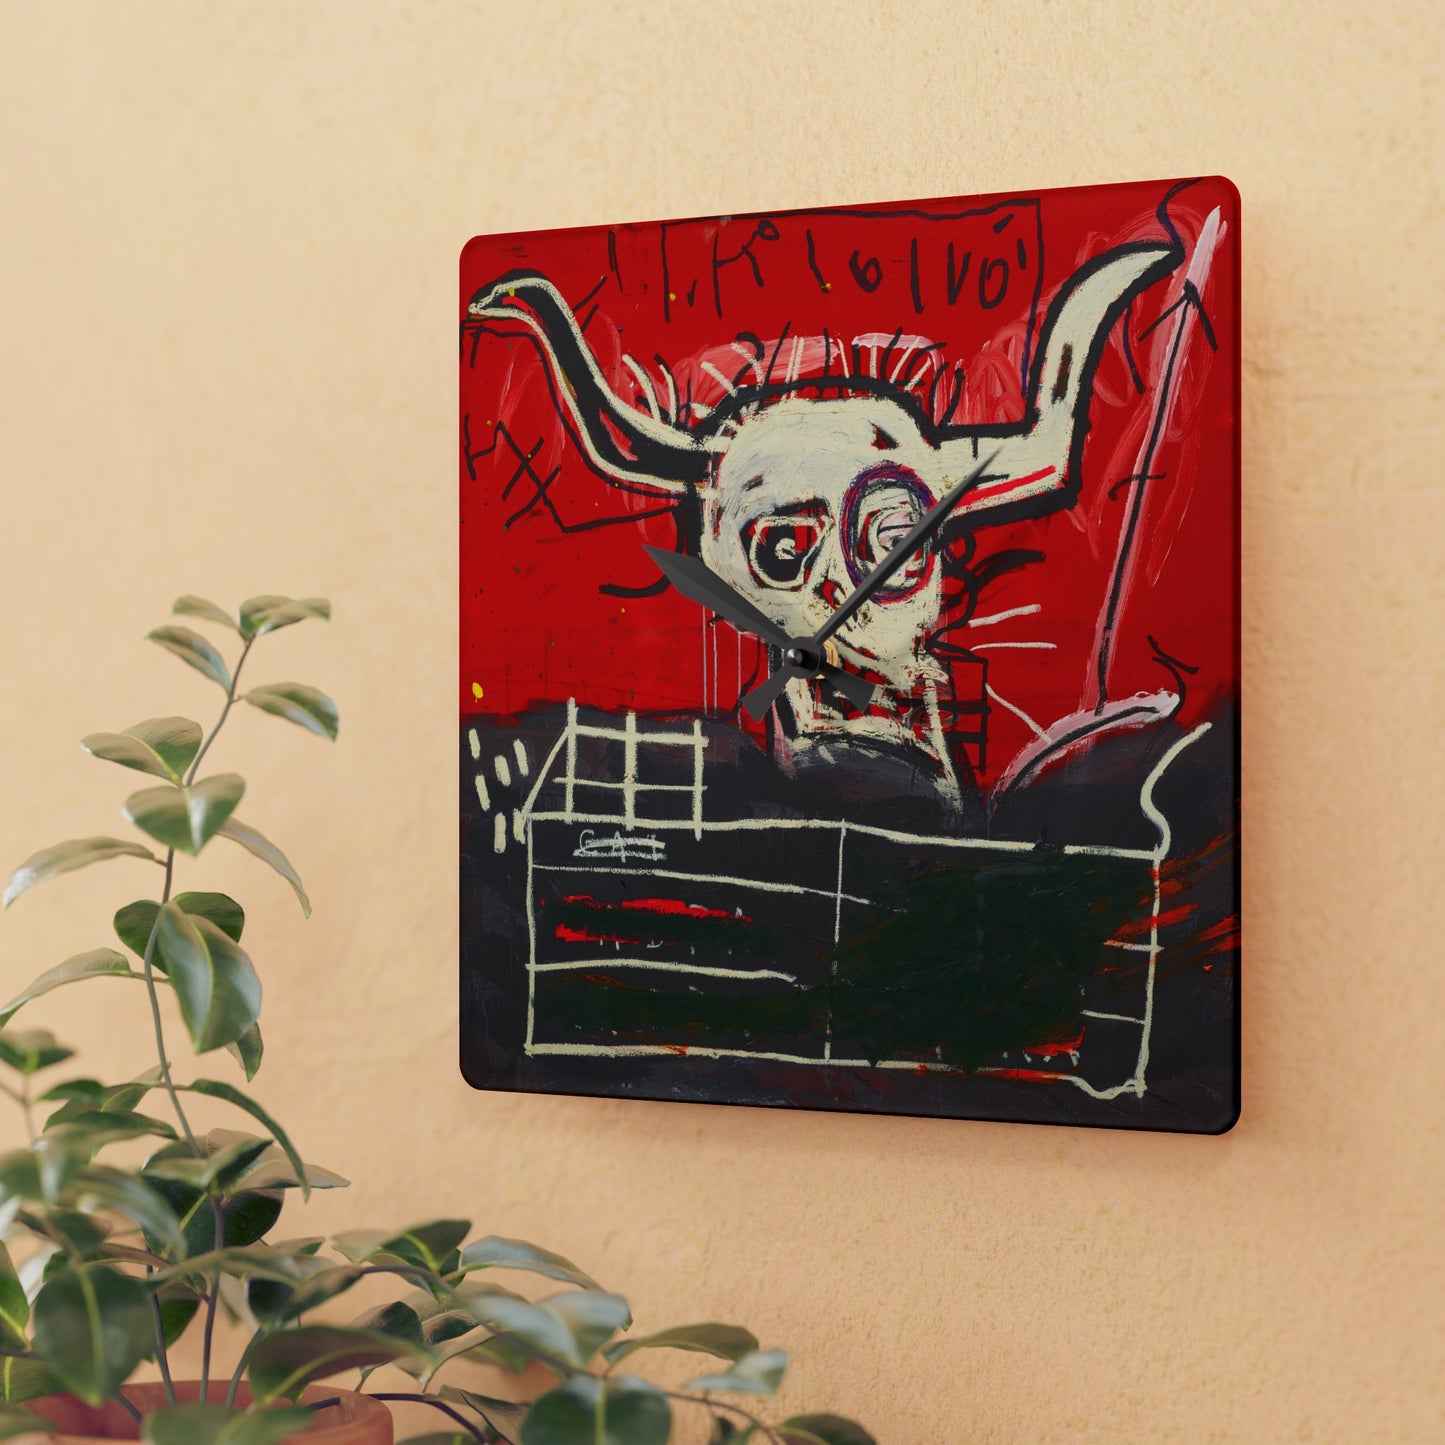 Jean-Michel Basquiat "La Cabra" Artwork Acrylic Wall Clock